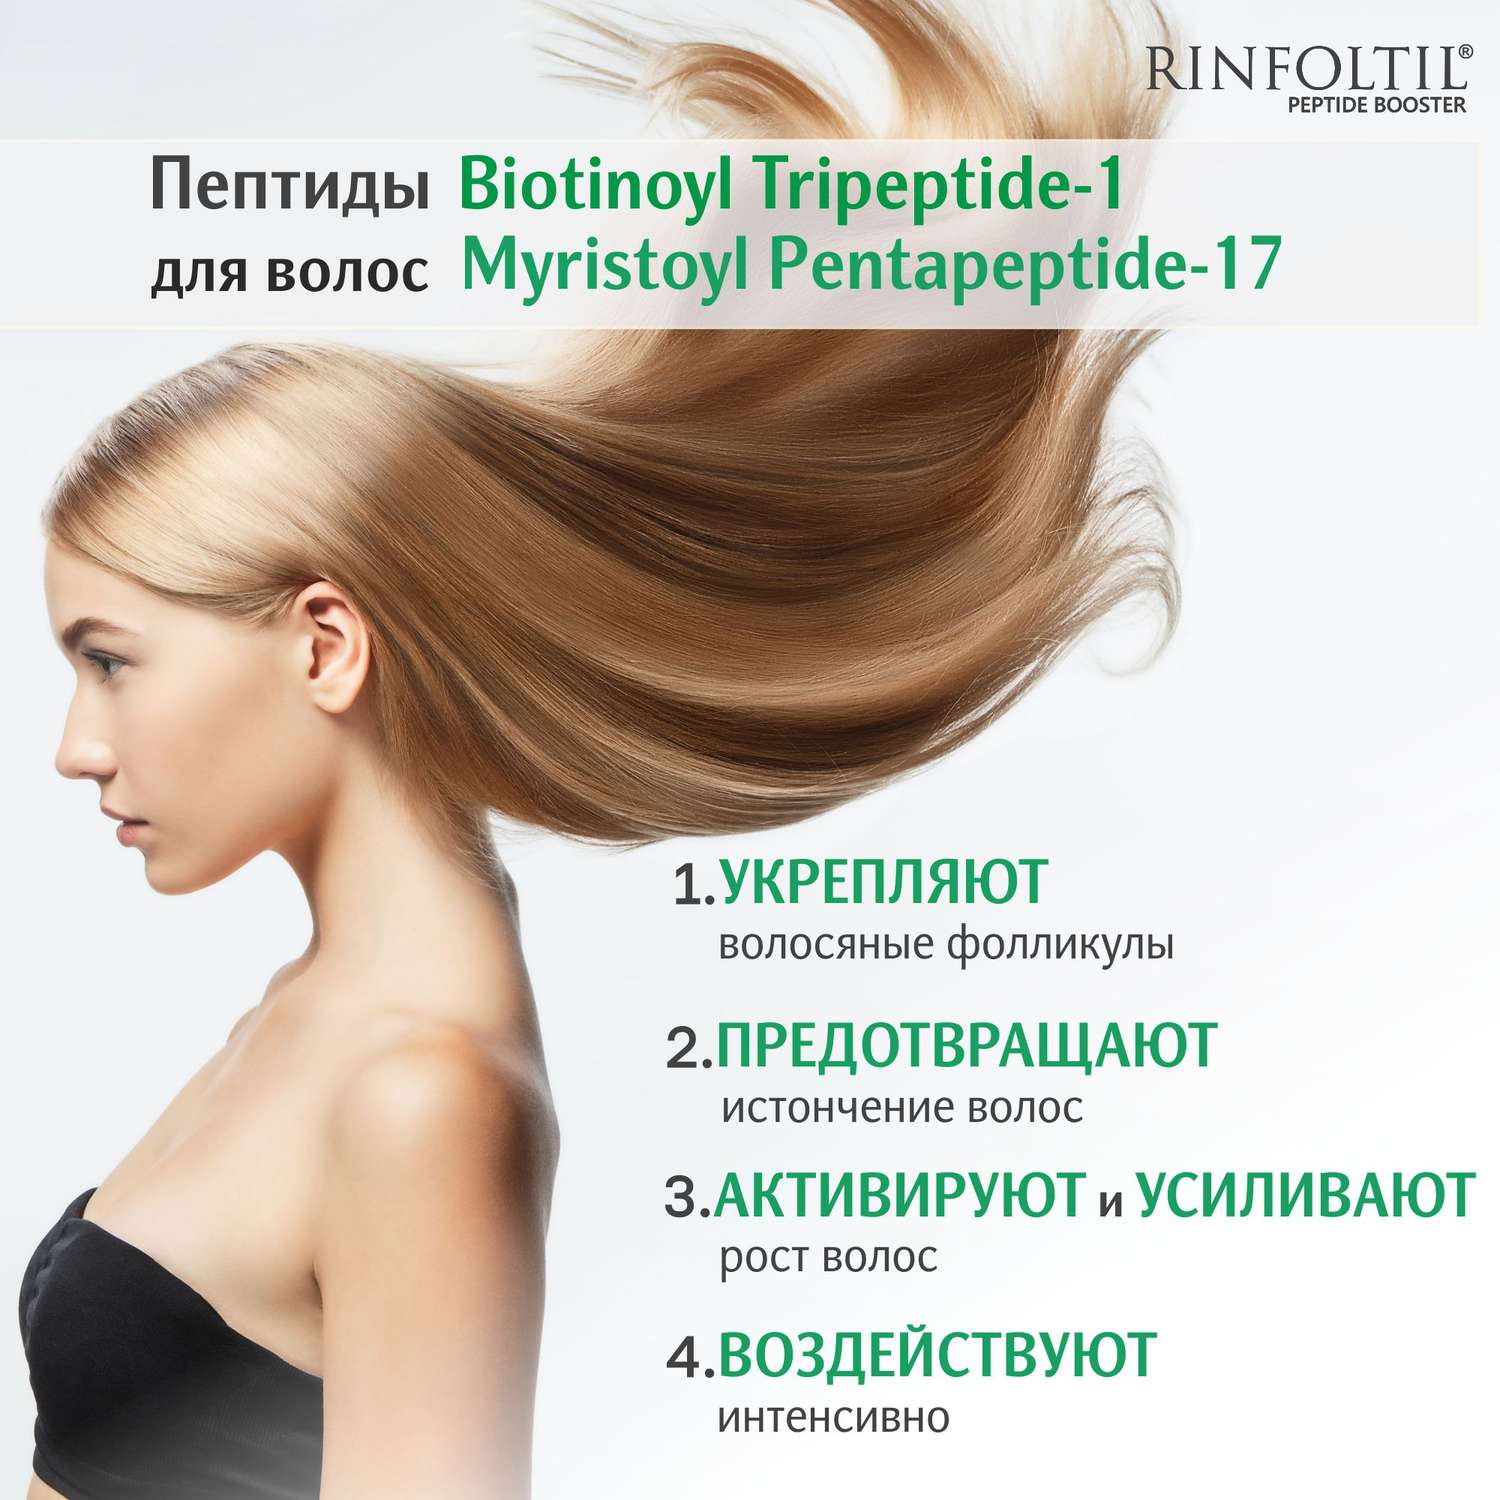 Сыворотка Rinfoltil ПЕПТИД BOOSTER. Липосомальная против выпадения волос и для роста волос - фото 6